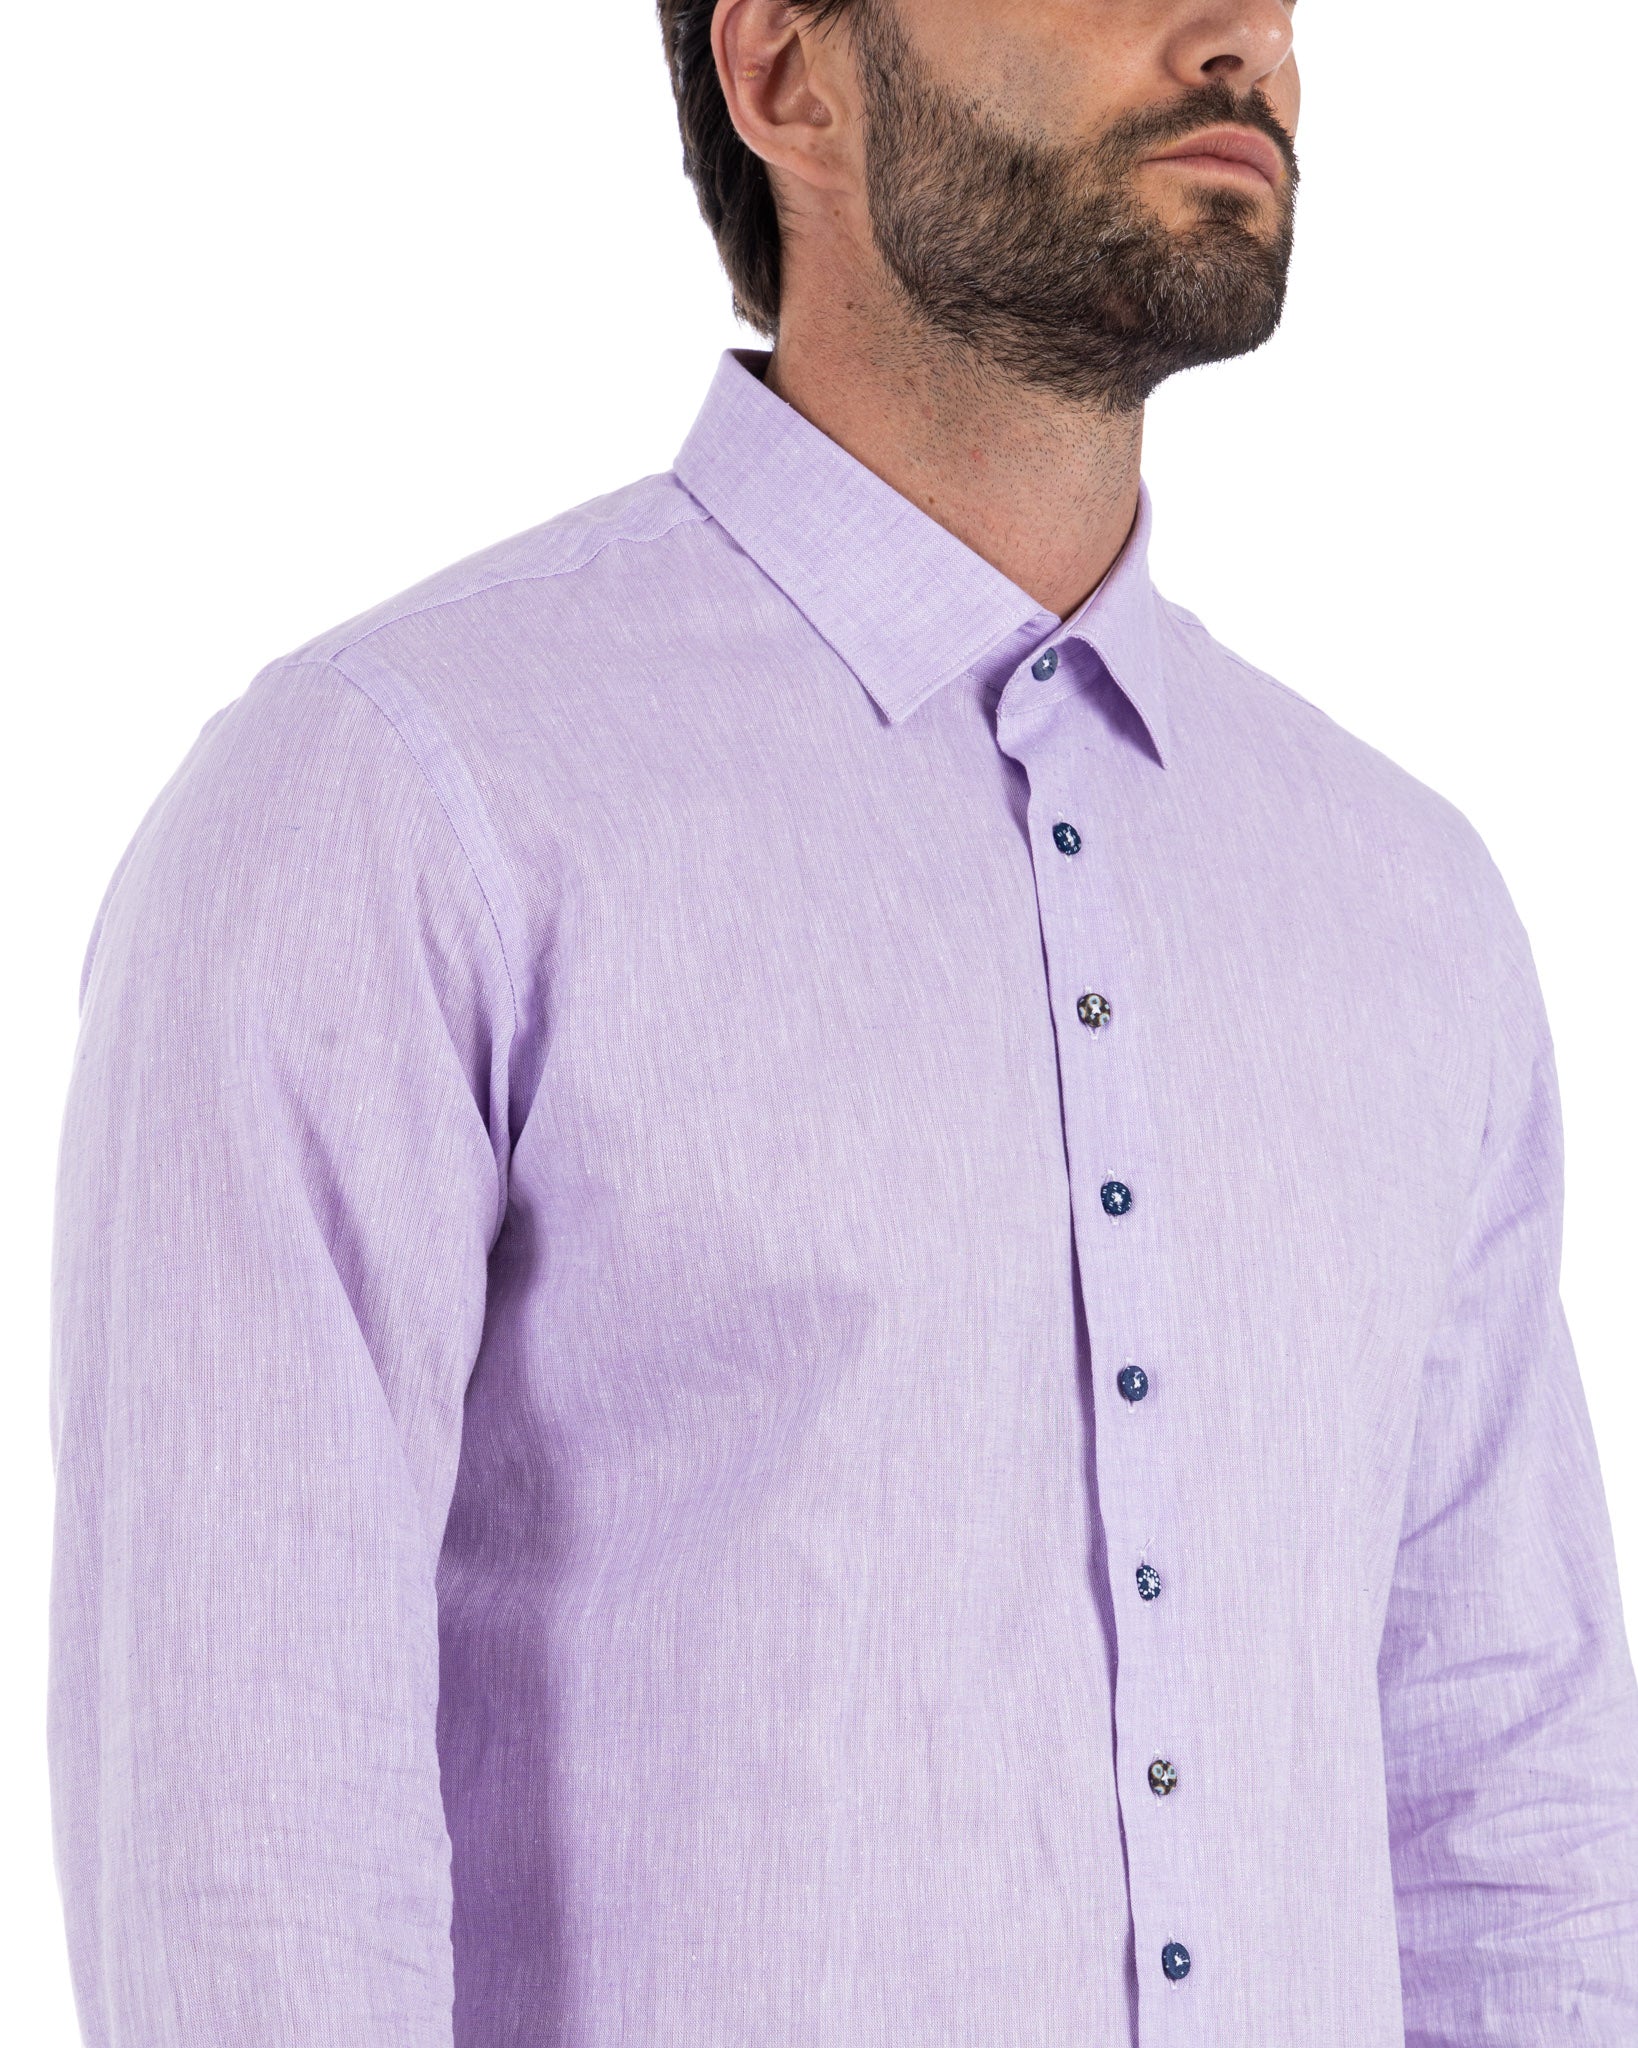 Praiano - camicia francese in lino lilla